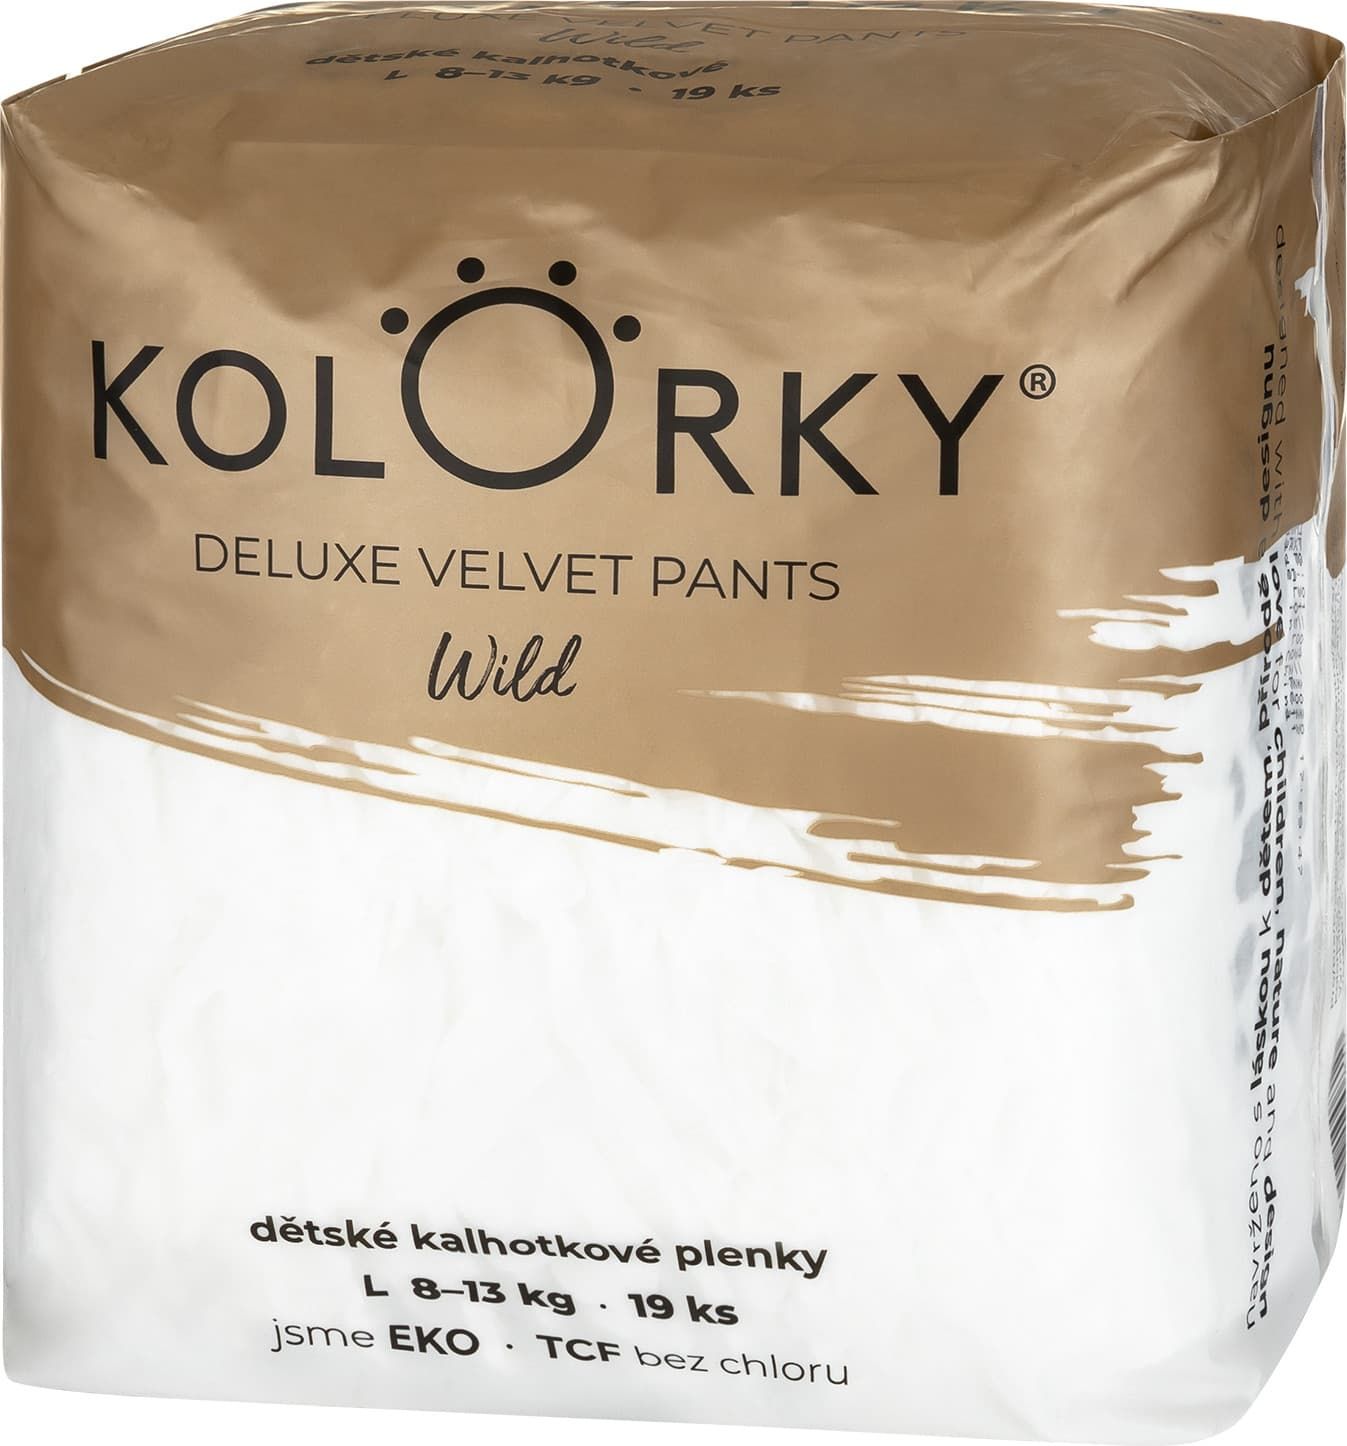 Kolorky Deluxe Velvet Pants Jednorázové kalhotkové eko plenky - wild - L (8-13 kg) 19 ks